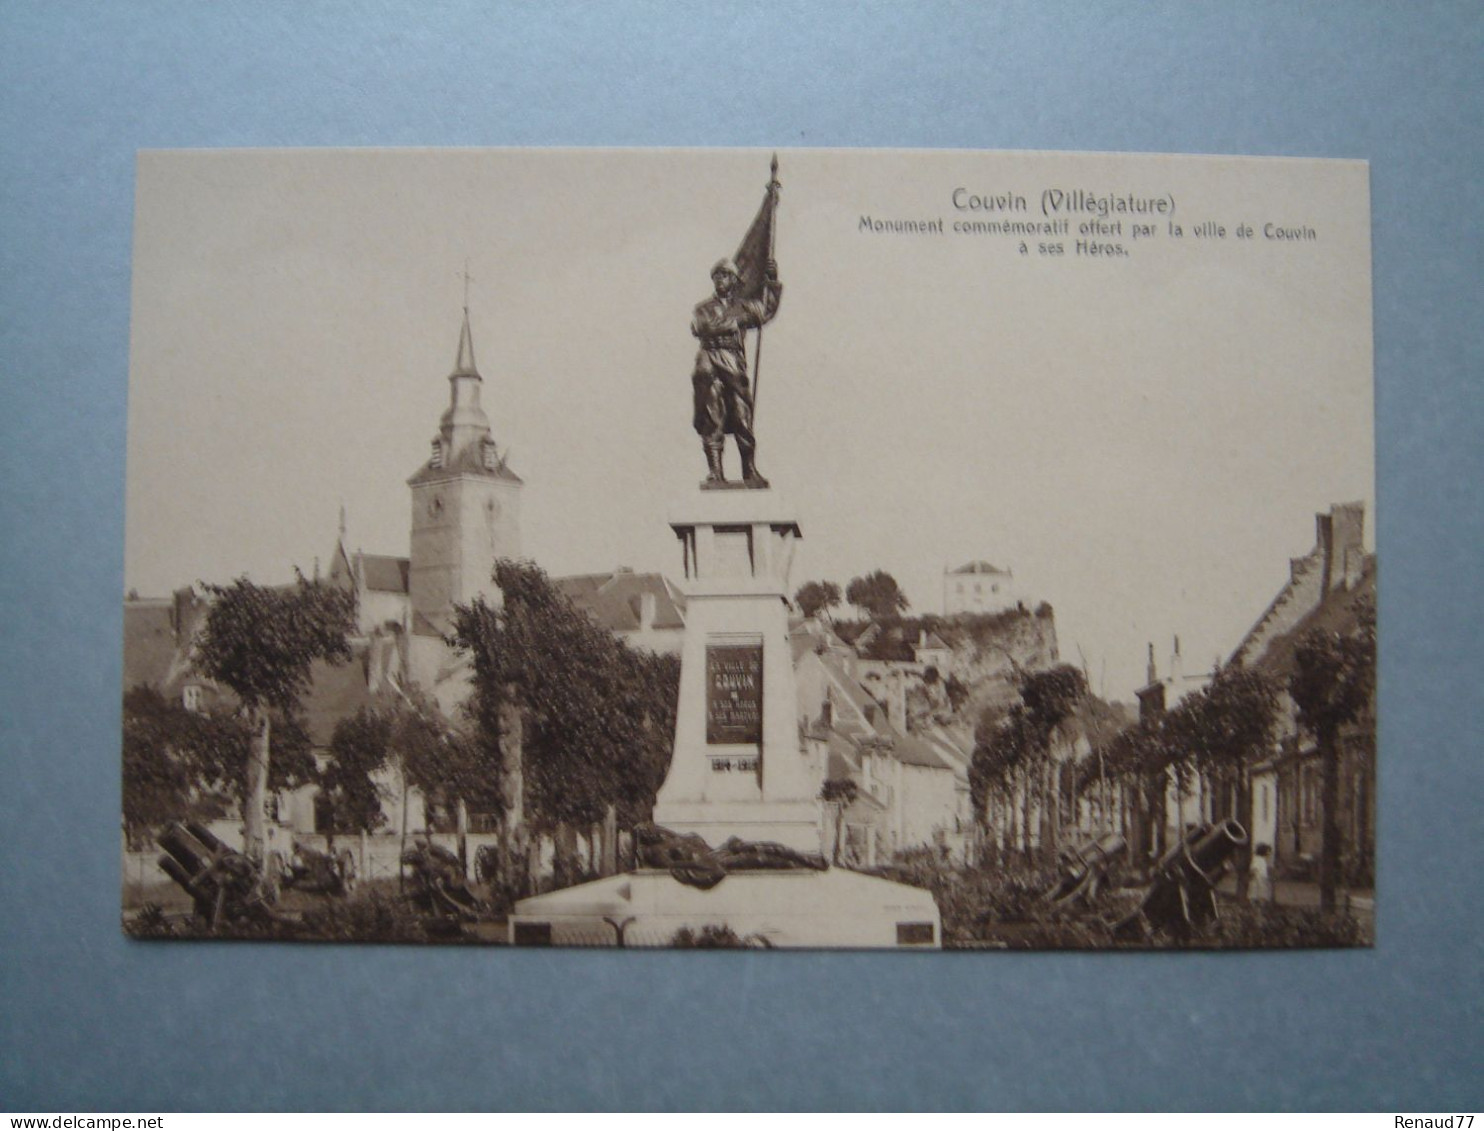 Couvin (Villégiature) Monument Commémoratif Offert Par La Ville De Couvin à Ses Héros - Couvin